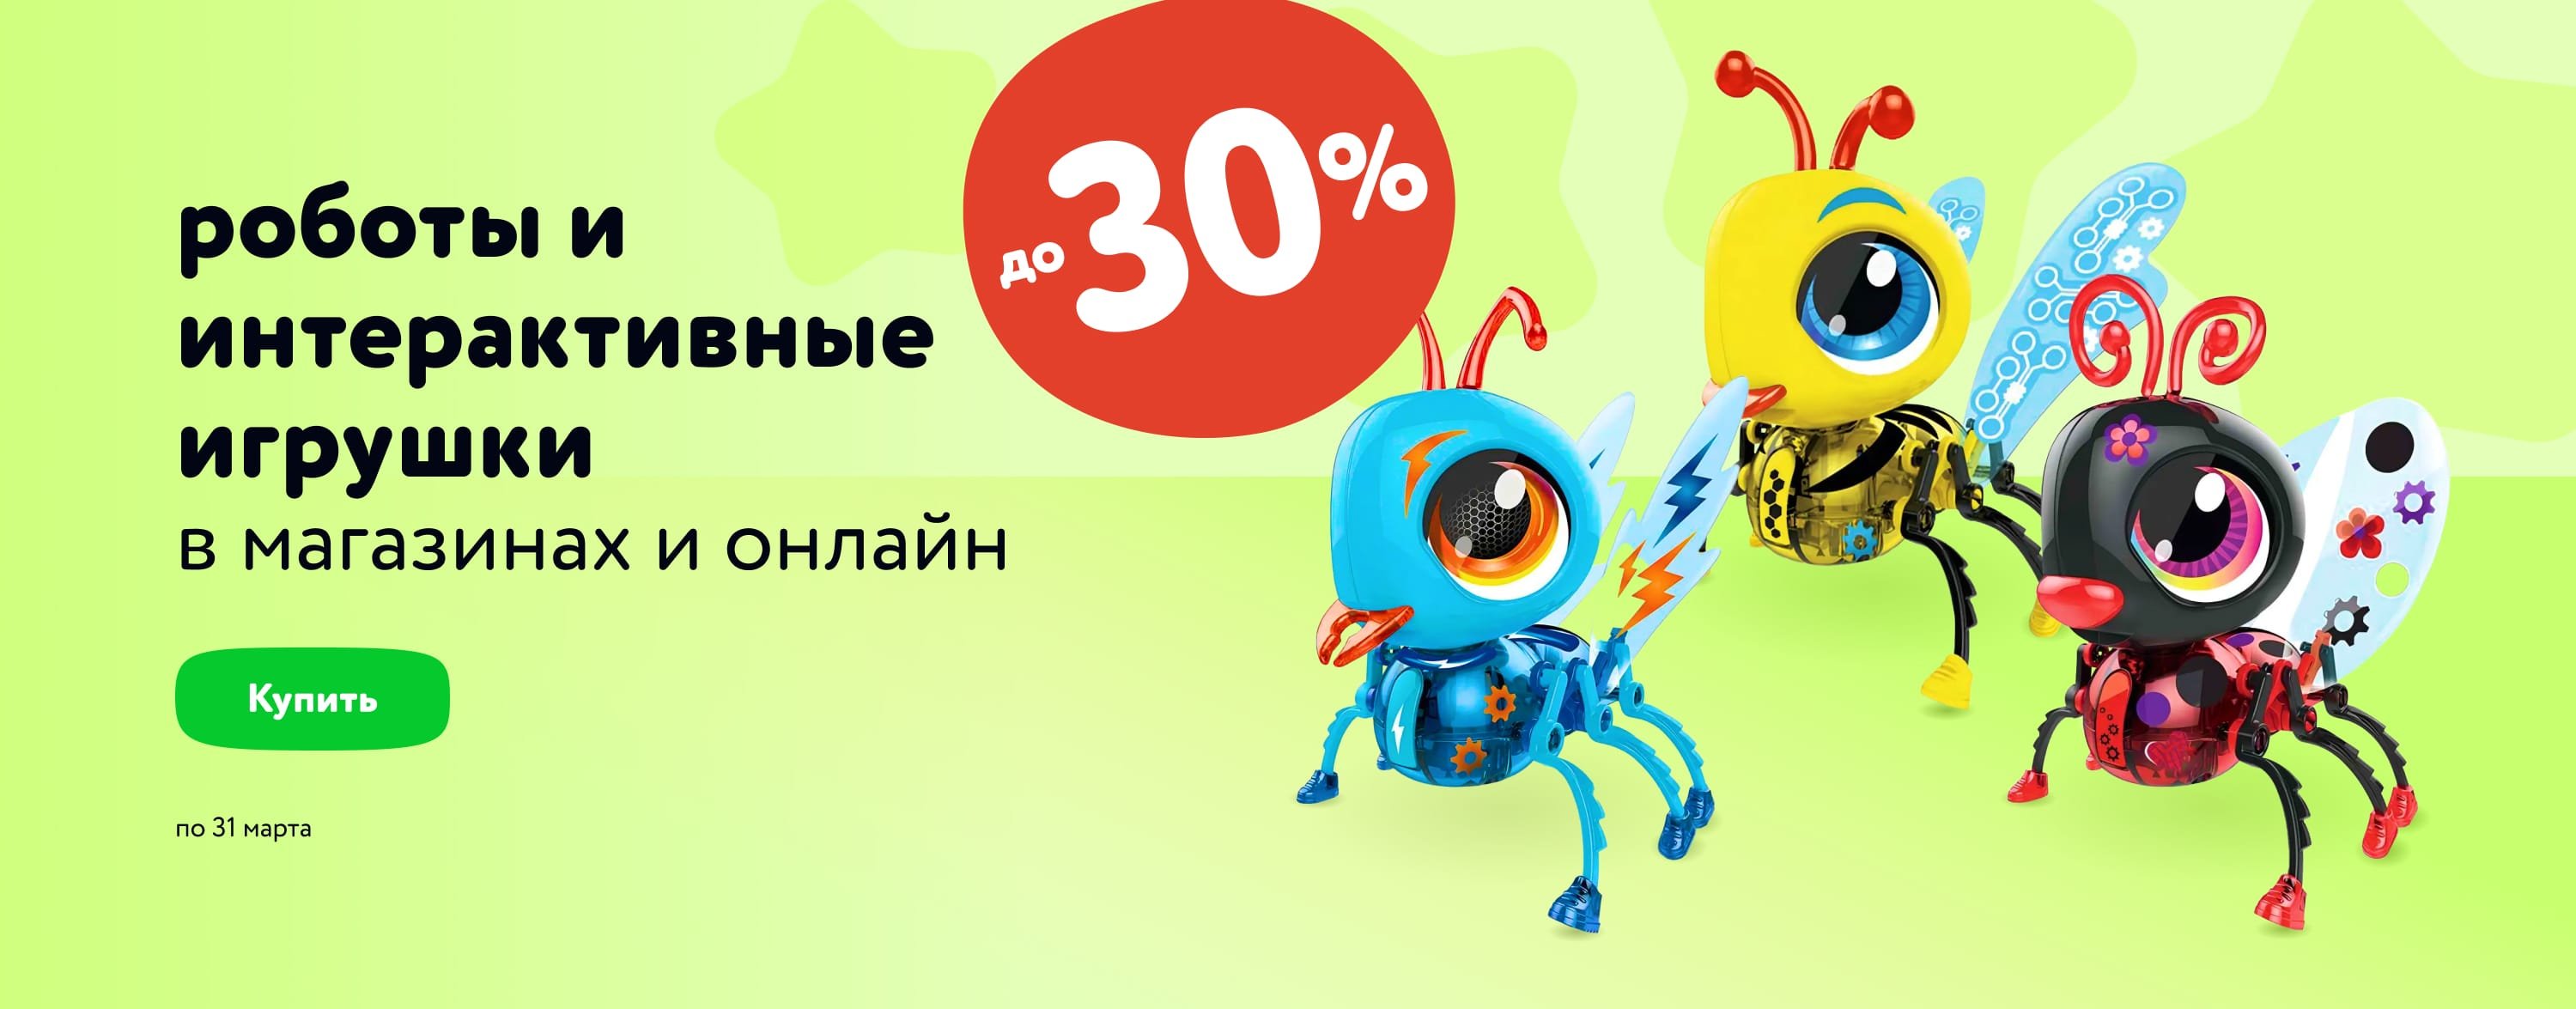 Роботы и интерактивные игрушки для детей со скидками до 30 %_карусель_категории